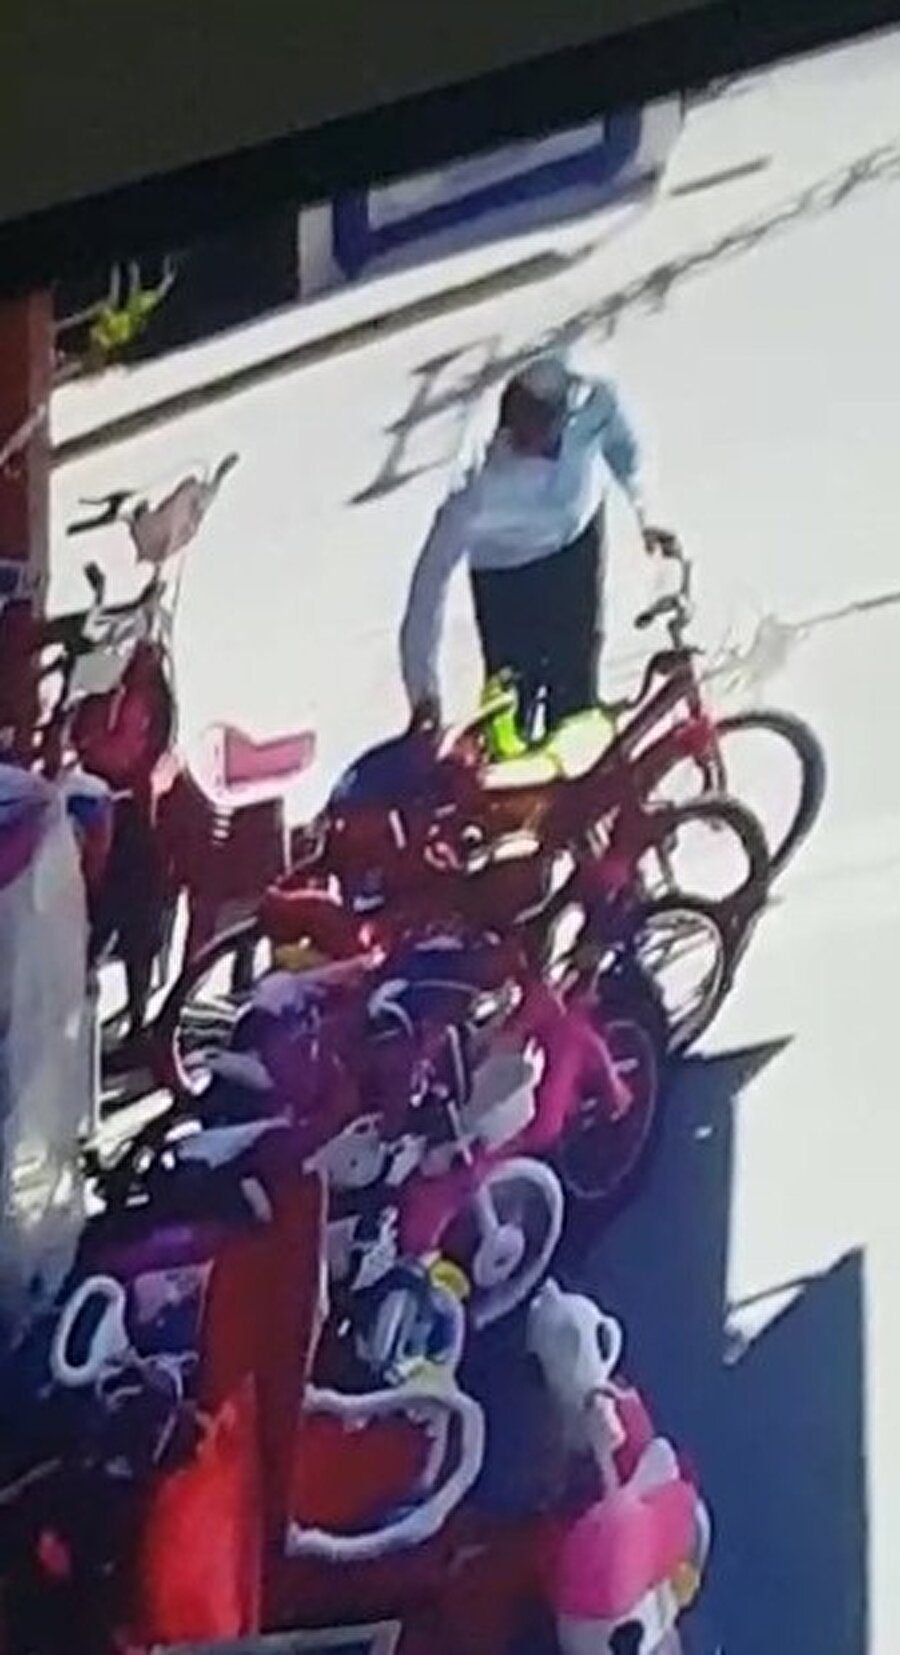 Hatay’ın Kırıkhan ilçesinde, emniyet amirliğinin karşısındaki bir oyuncakçıdan bisiklet çalan karı koca, iş yerinin güvenlik kamerasına yakalandı. 